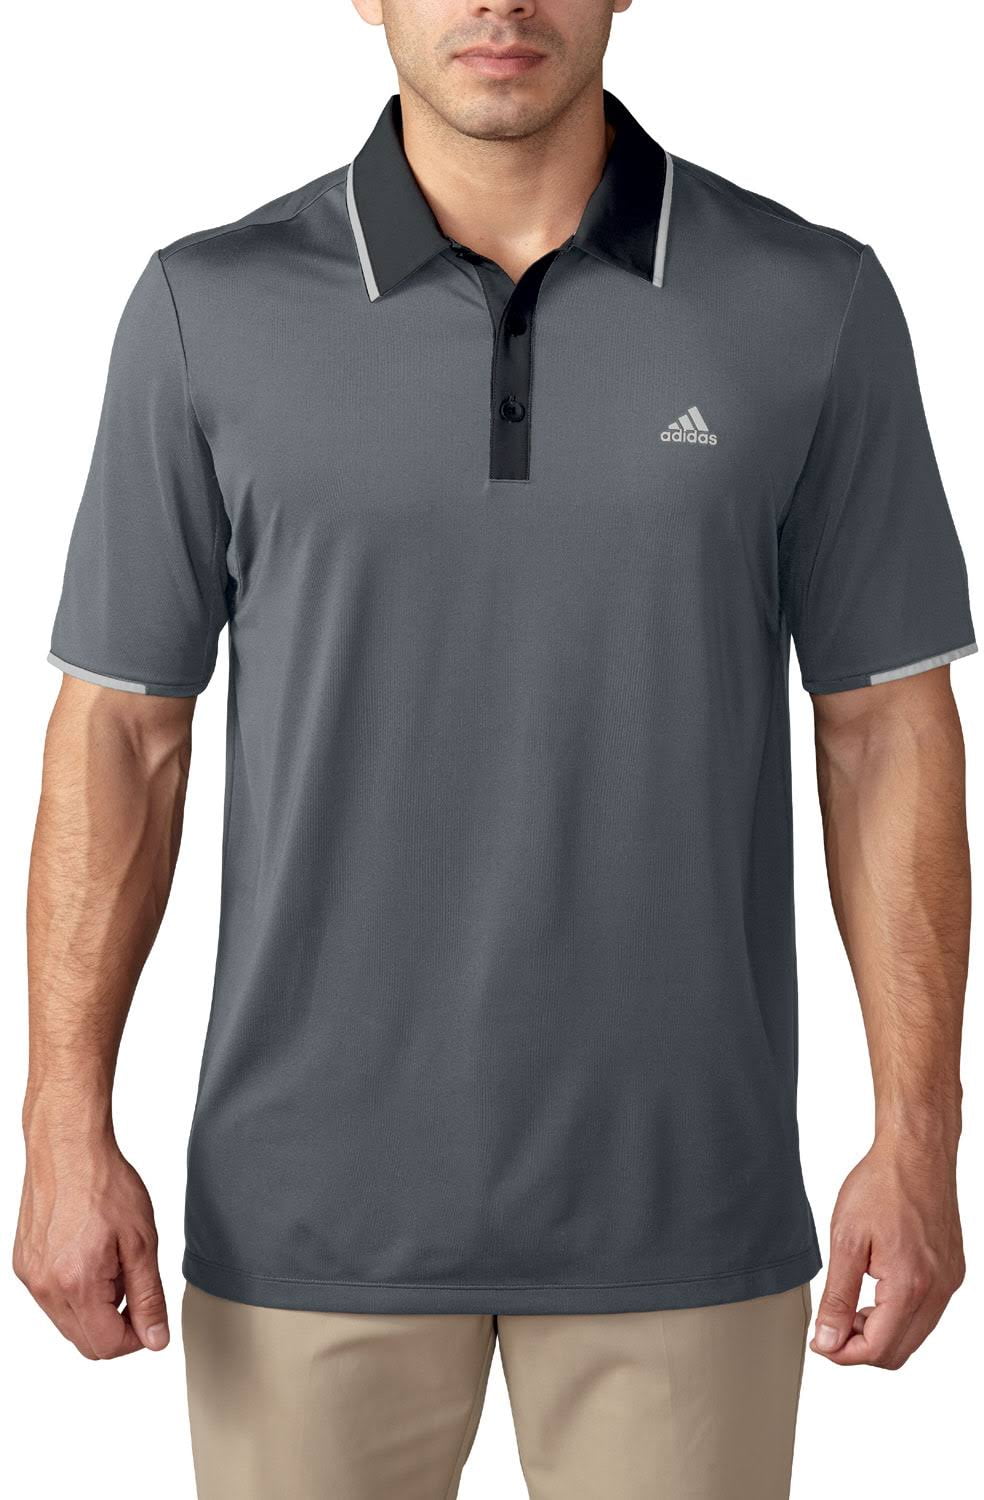 Eliminación colgante diseño adidas Golf Adidas Women's ClimaLite Short Sleeve Pique Polo Shirt -  Walmart.com